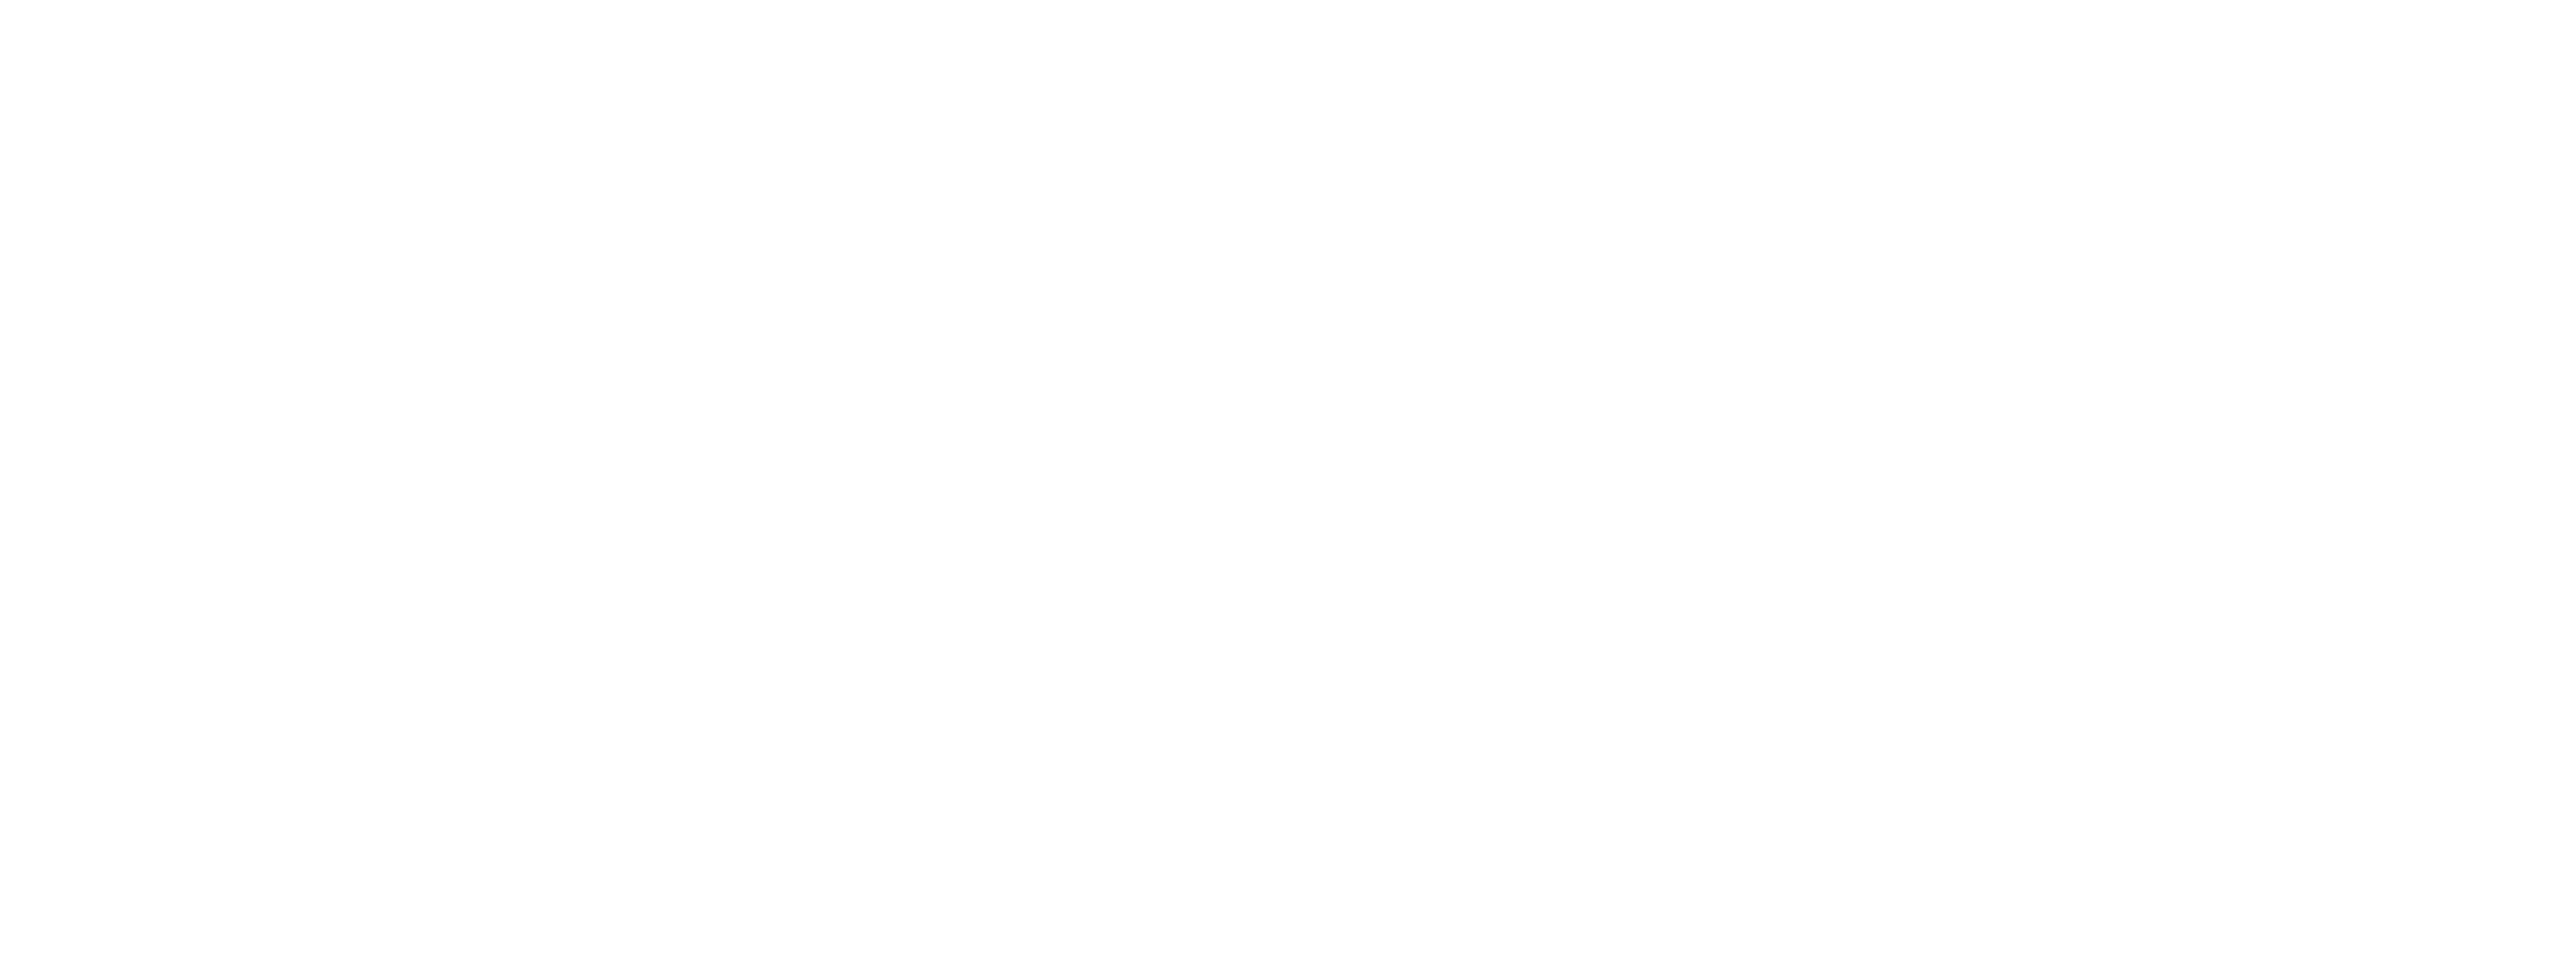 VNV-Yatchs : 